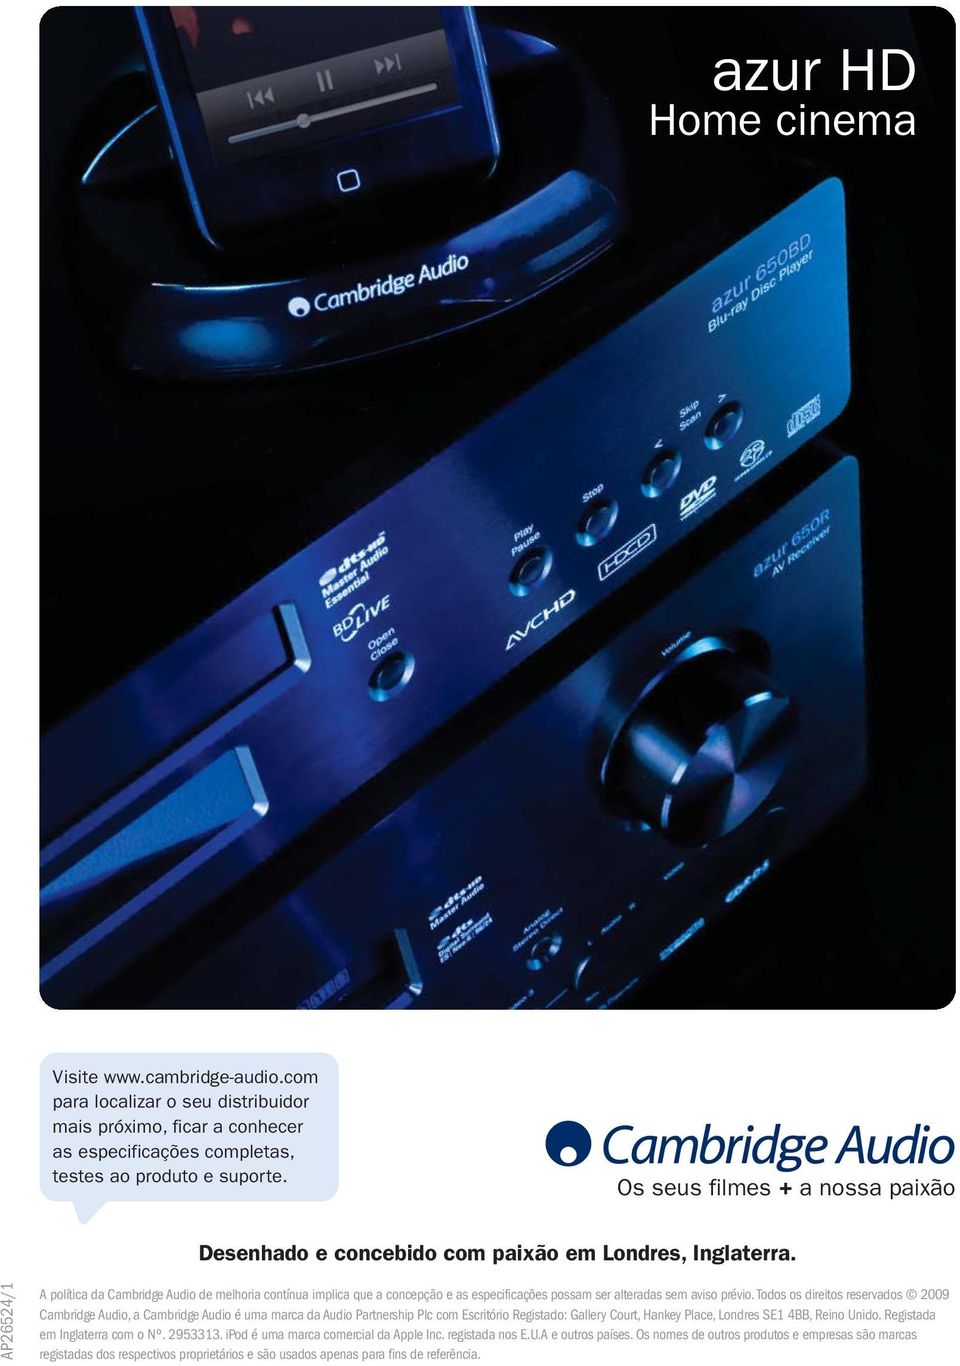 AP26524/1 A política da Cambridge Audio de melhoria contínua implica que a concepção e as especificações possam ser alteradas sem aviso prévio.